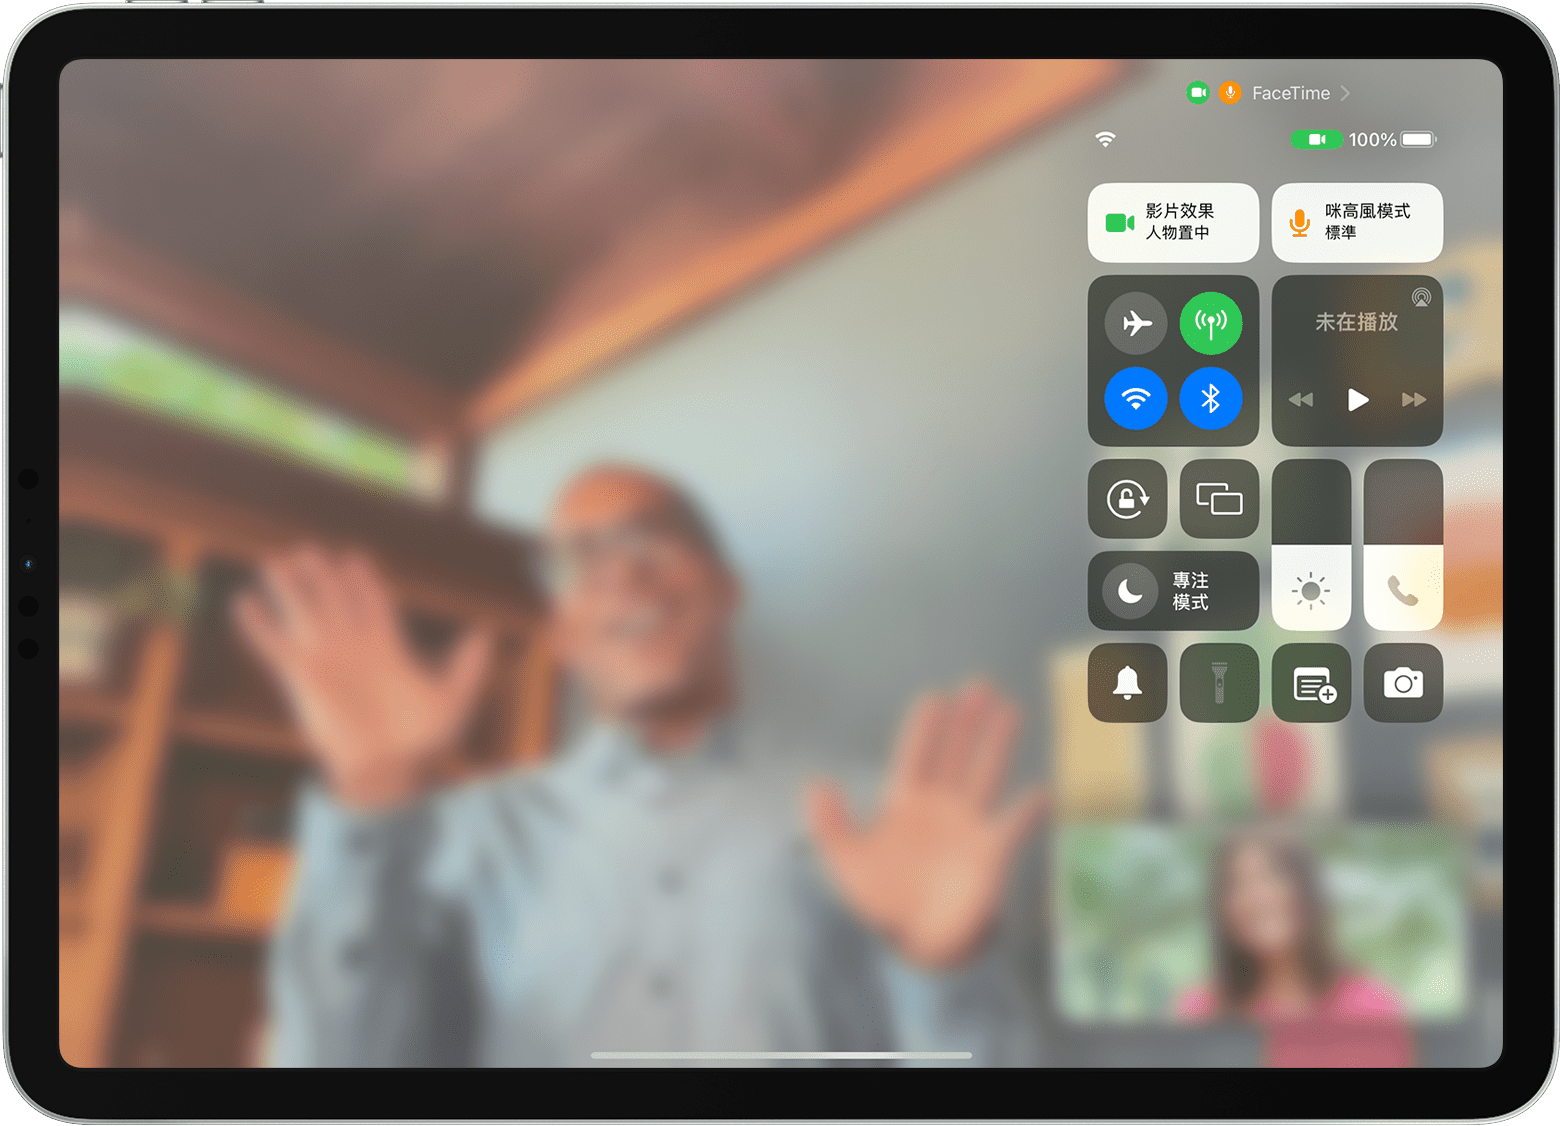 iPad 畫面正顯示 FaceTime 通話和「控制中心」，包括「影片效果」按鈕